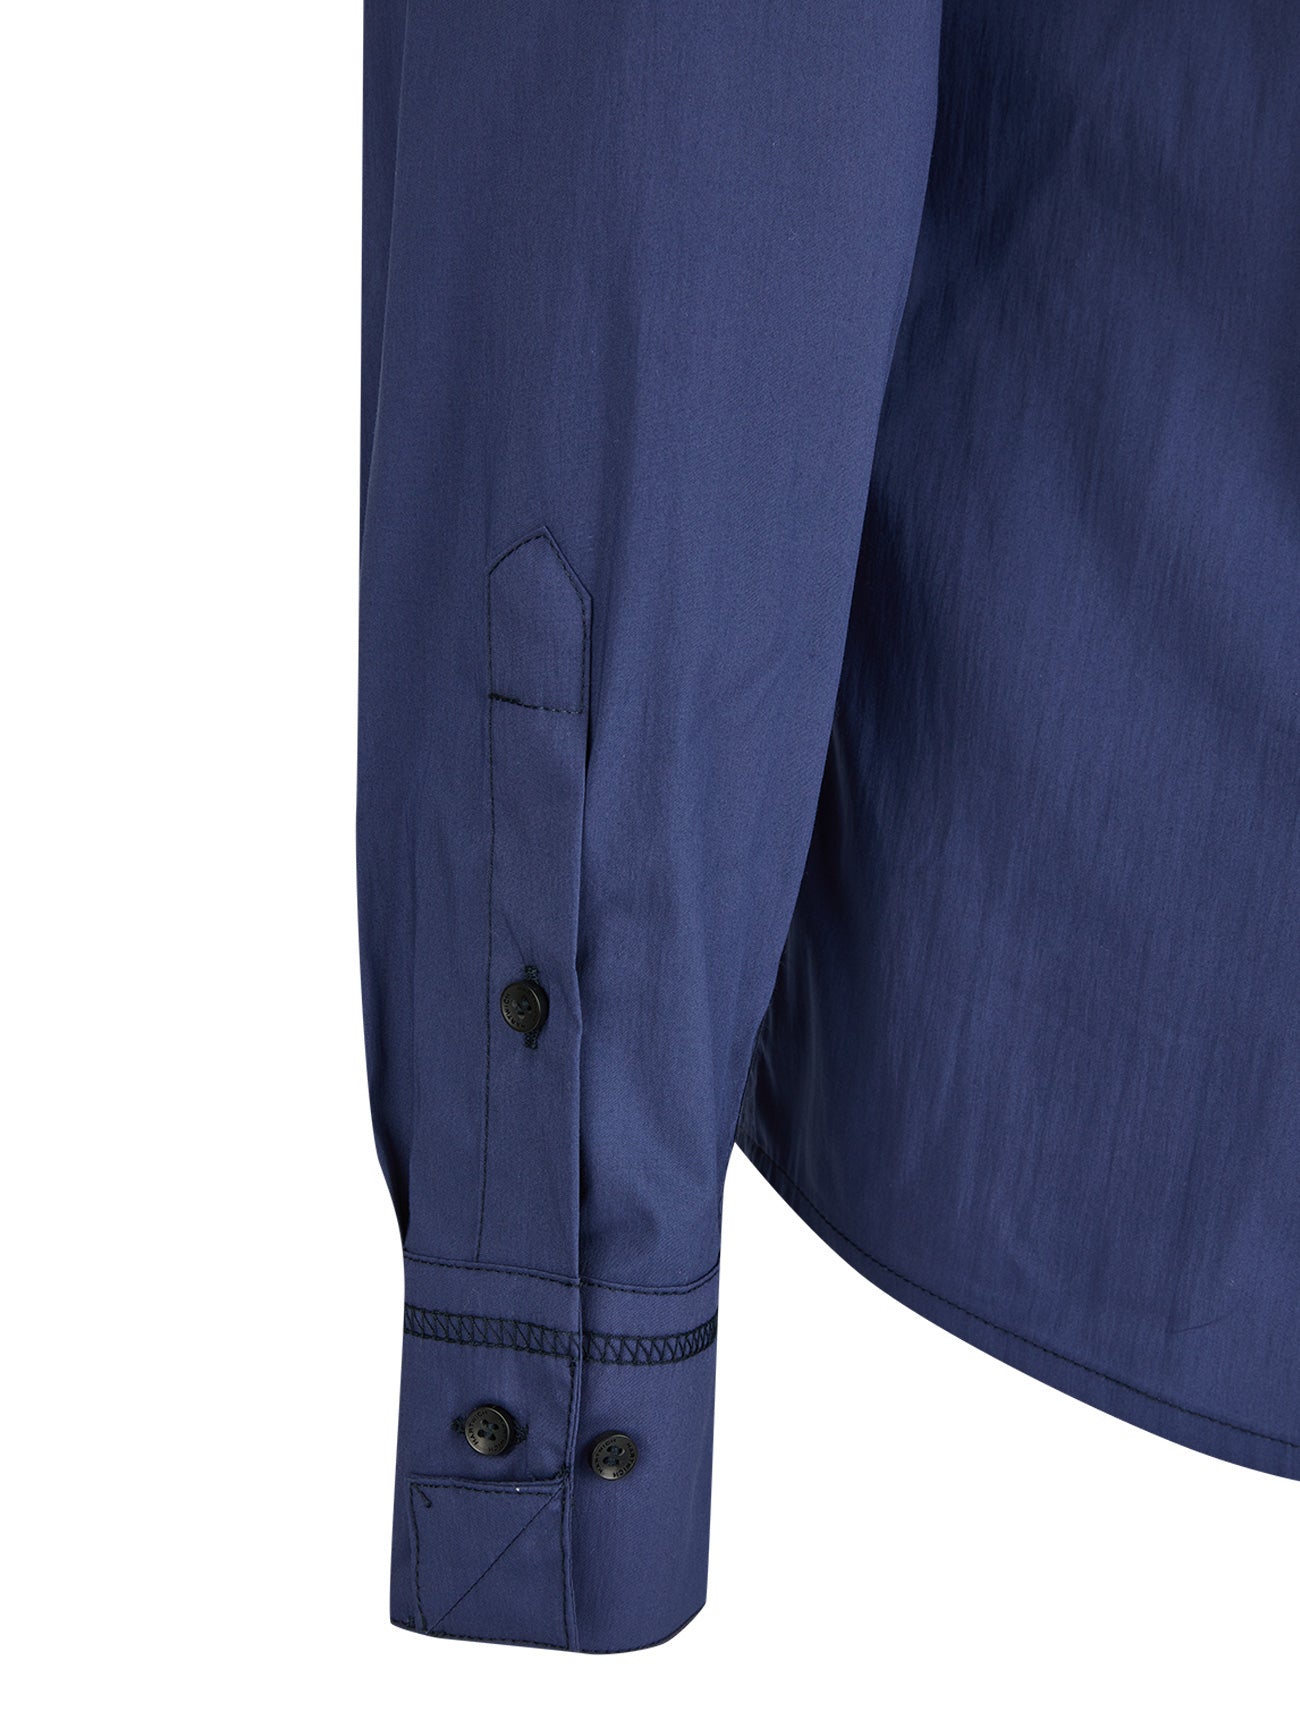 Zamboni - magisches Reißverschlusshemd in italienischem Blau